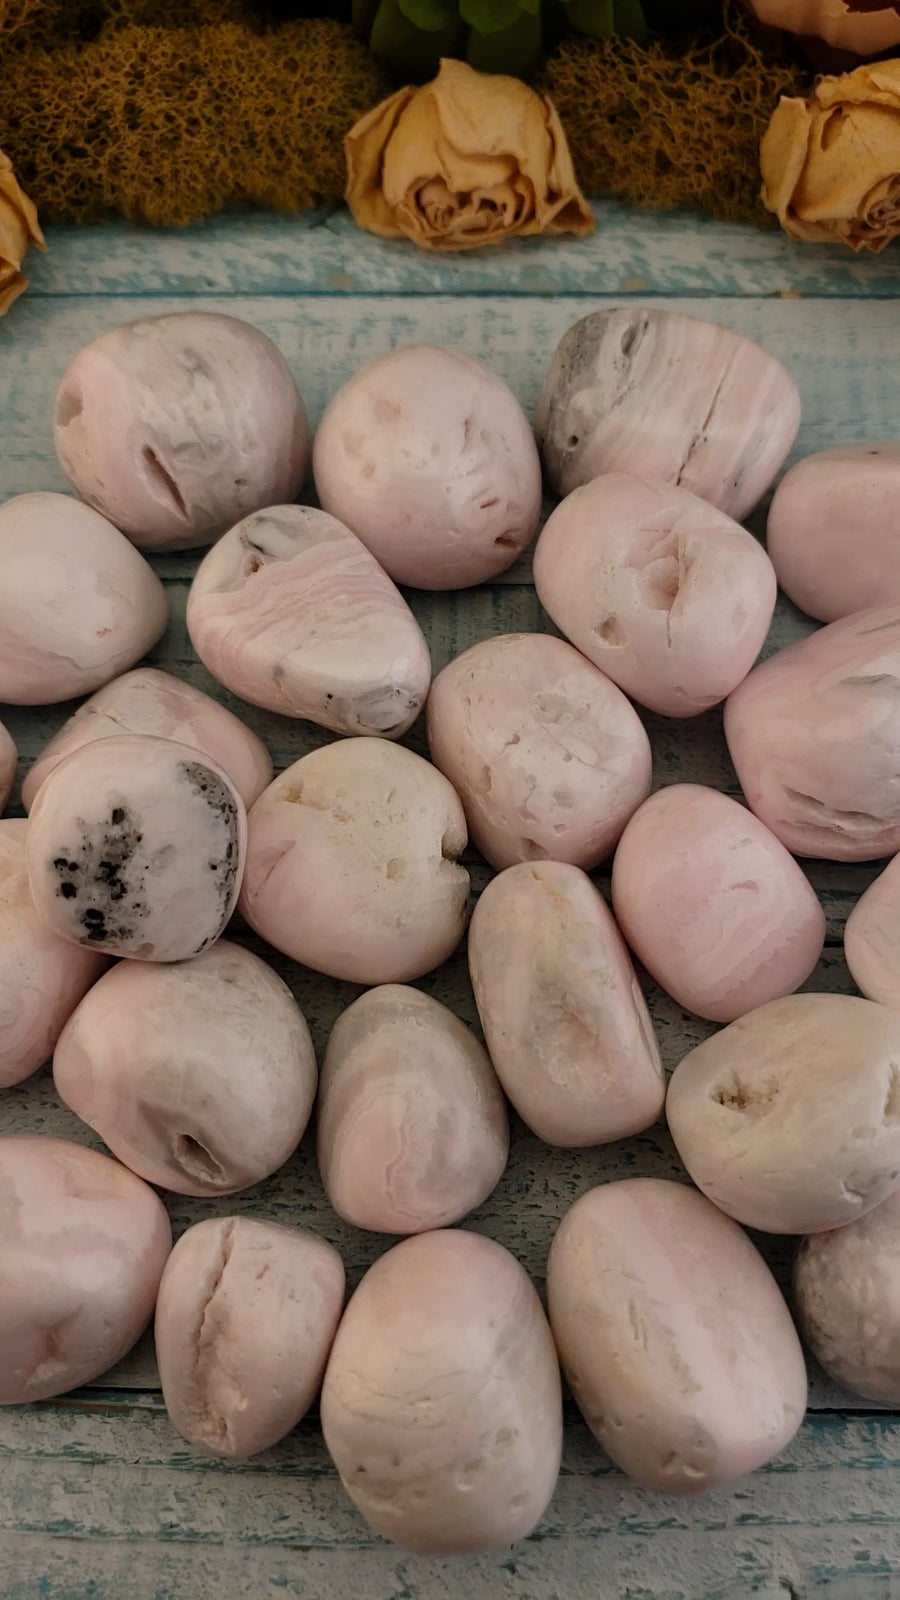 Pink Mangano Calcite Tumbled Gemstone - One Stone or Bulk Wholesale - Video 2